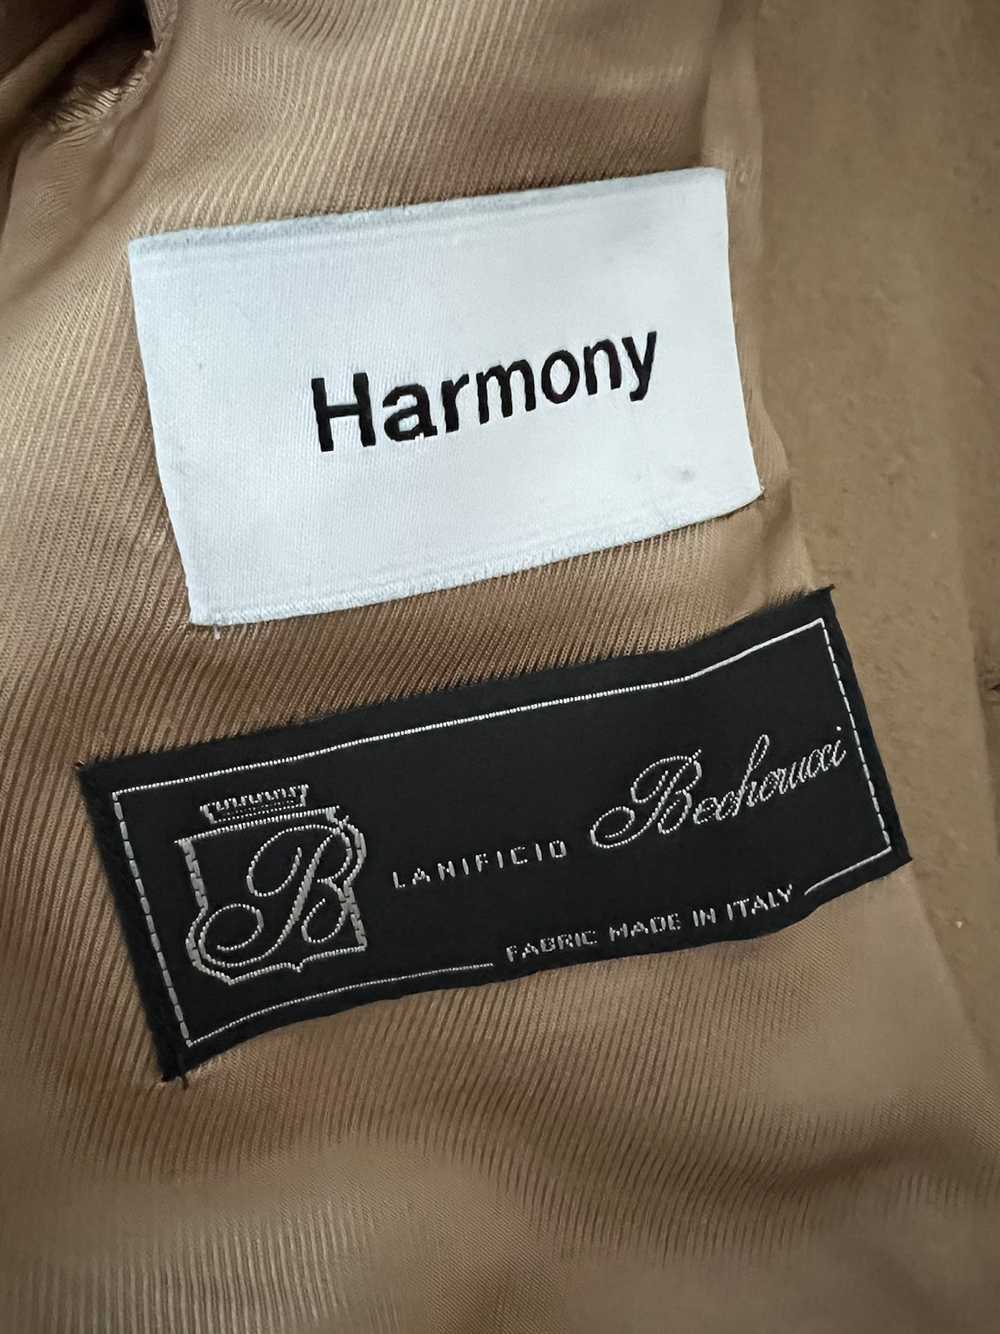 Harmony Paris Harmony Paris Magnus Jacket - image 3